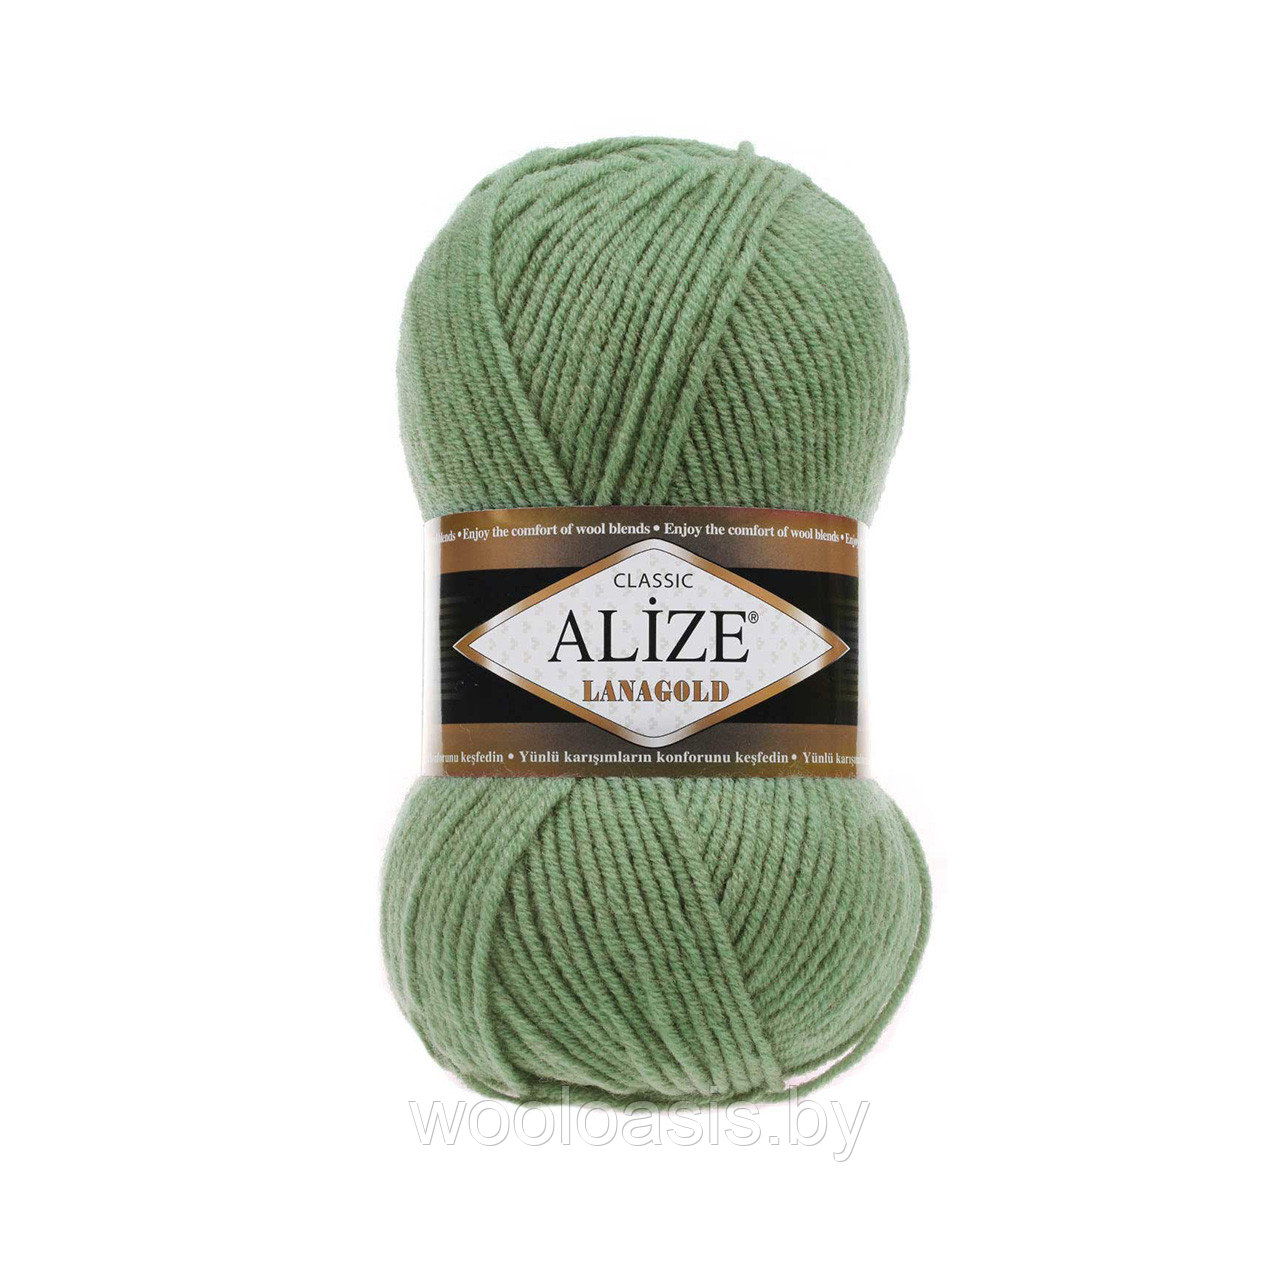 Пряжа Alize Lanagold Classic, Ализе Ланаголд Классик, турецкая, шерсть с акрилом, для ручного вязания (цвет 180)